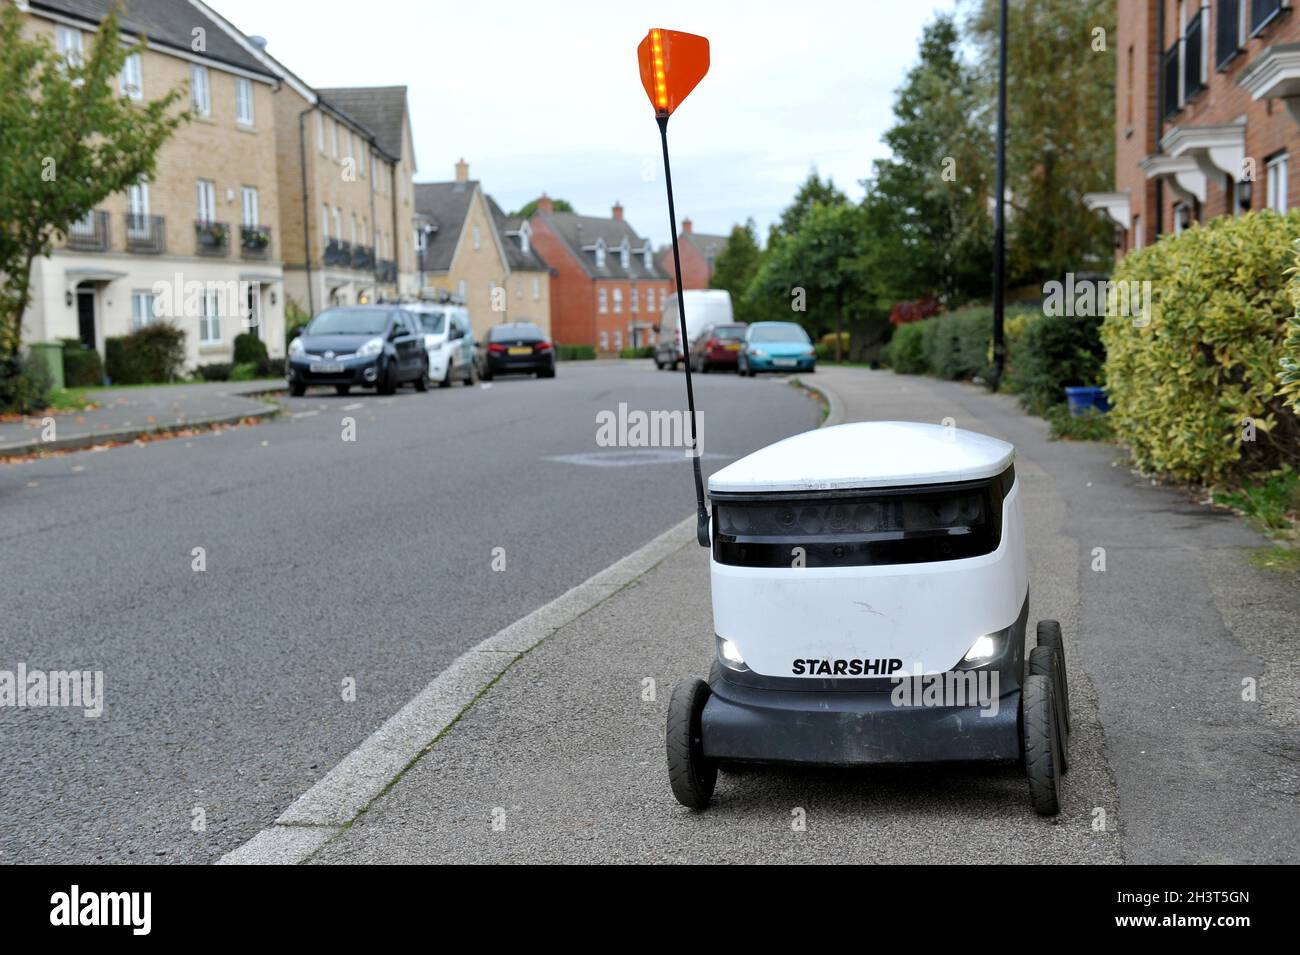 Ein Raumschiff-Roboter in der Gegend von Oxley Park in Milton Keynes, Großbritanniens erster autonomer Zustelldienst, der kontaktlose Zustelllösungen bietet, läuft b Stockfoto